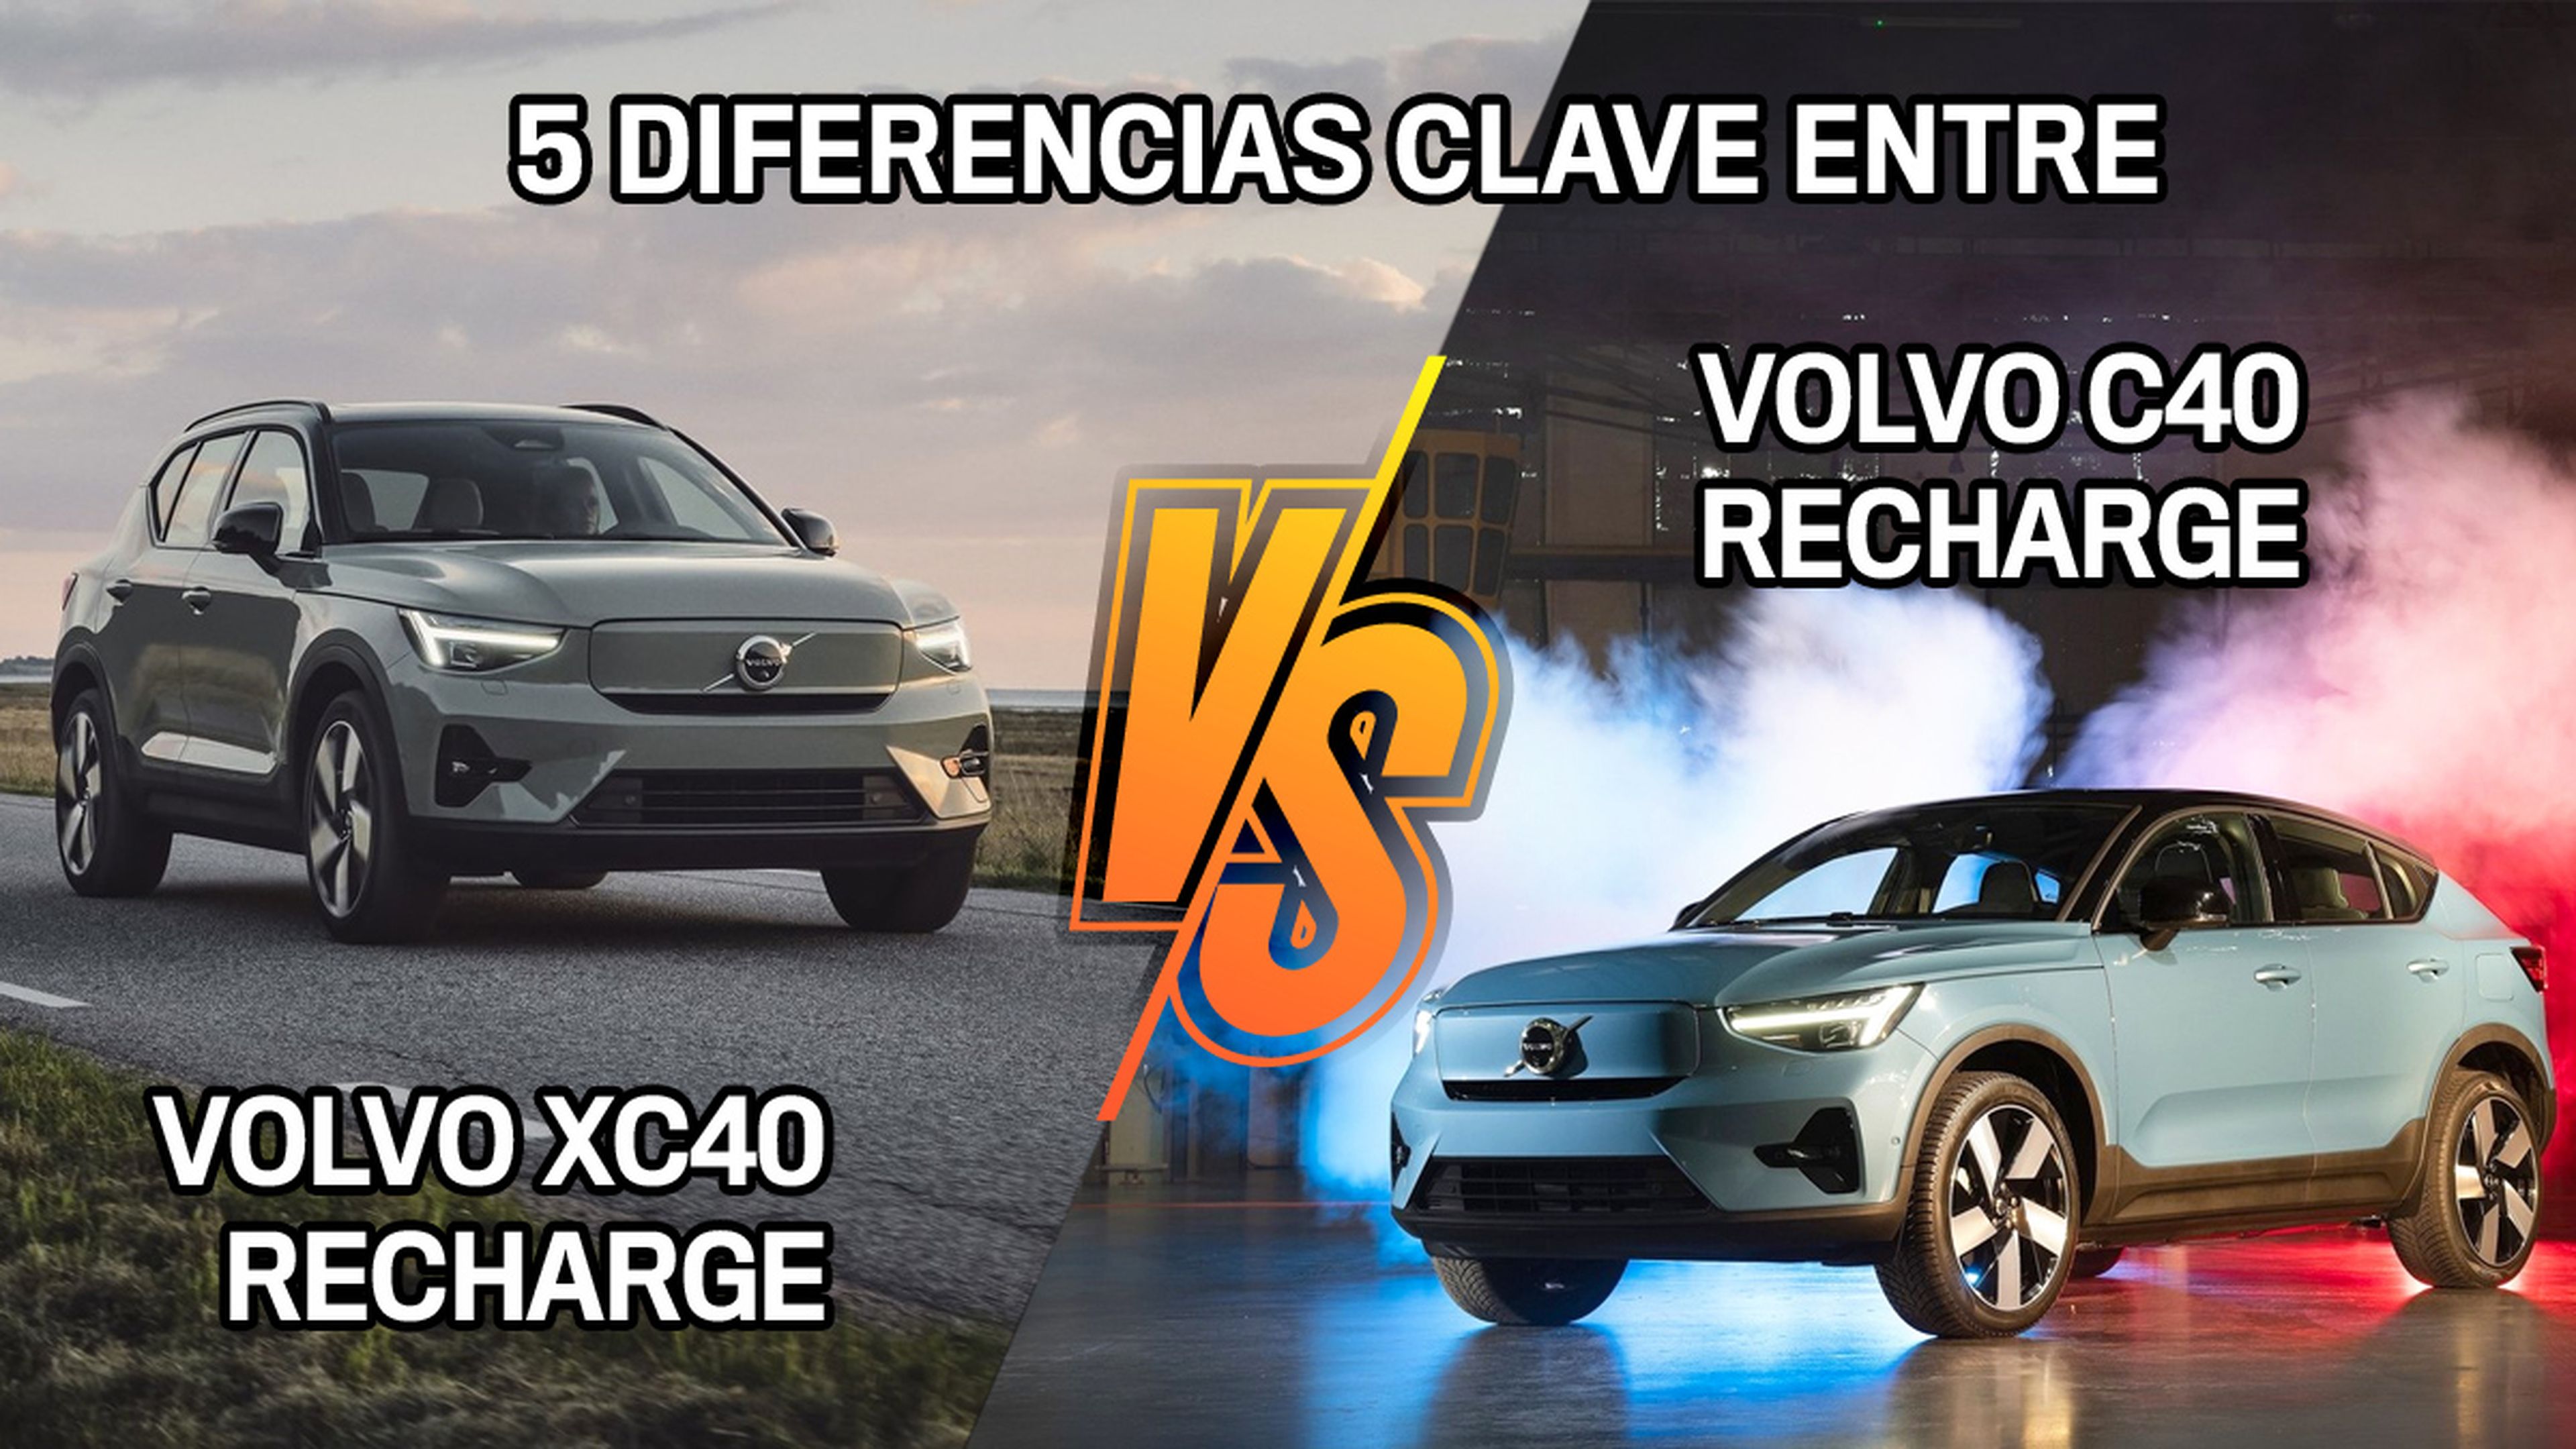 Cinco diferencias clave entre el Volvo C40 y el Volvo XC40 Recharge